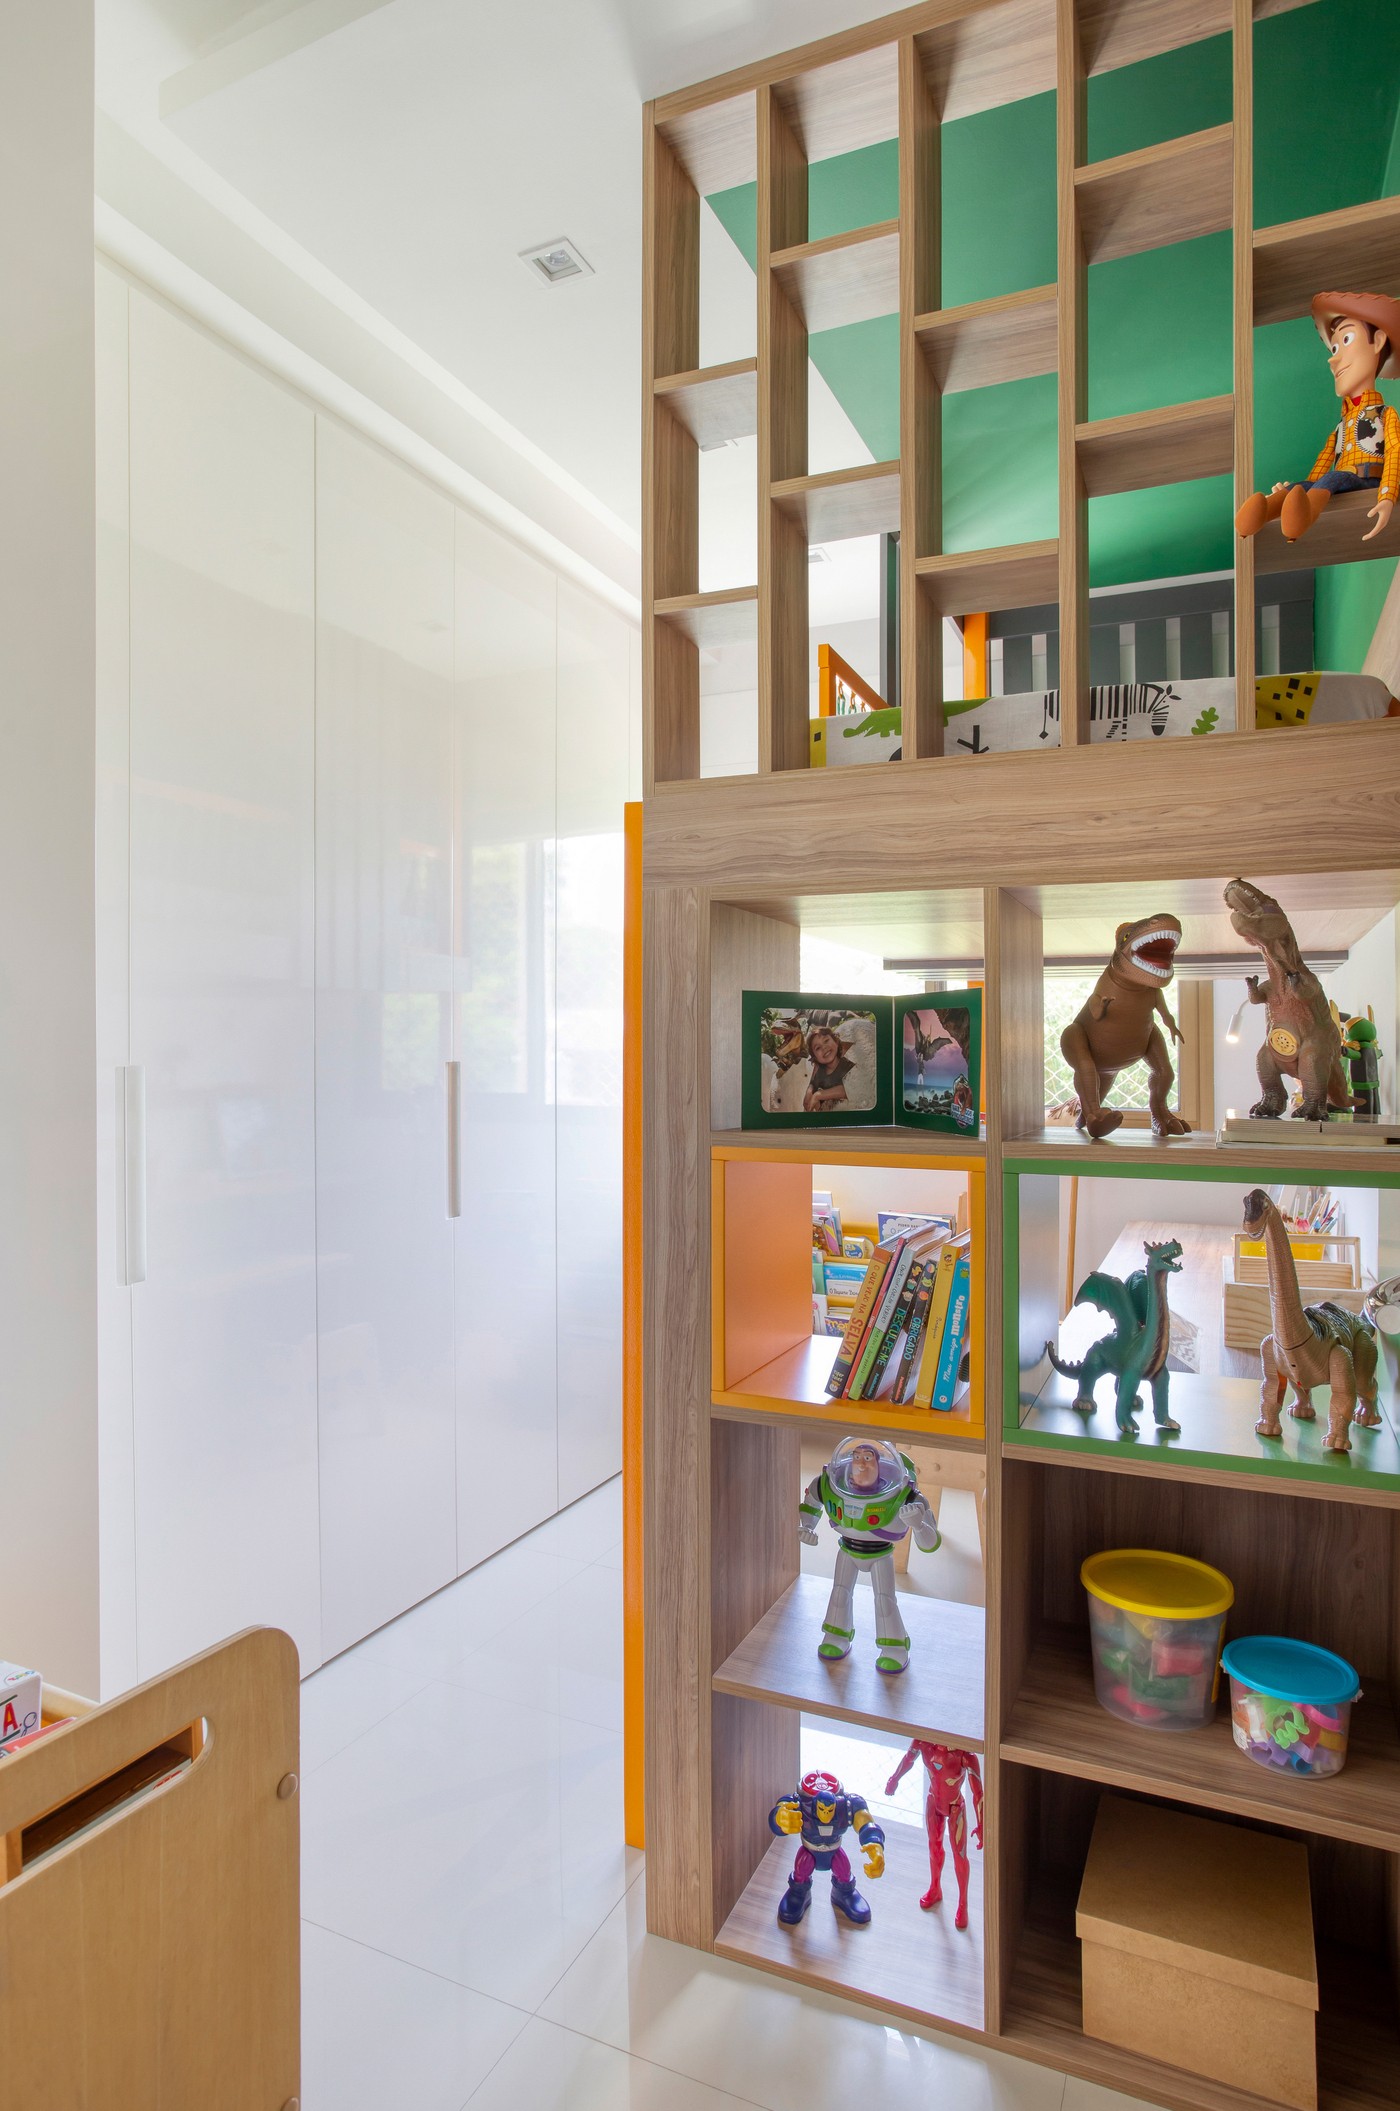 Décor do dia: quarto infantil pequeno tem boas soluções de aproveitamento de espaço (Foto: Raiana Medina)